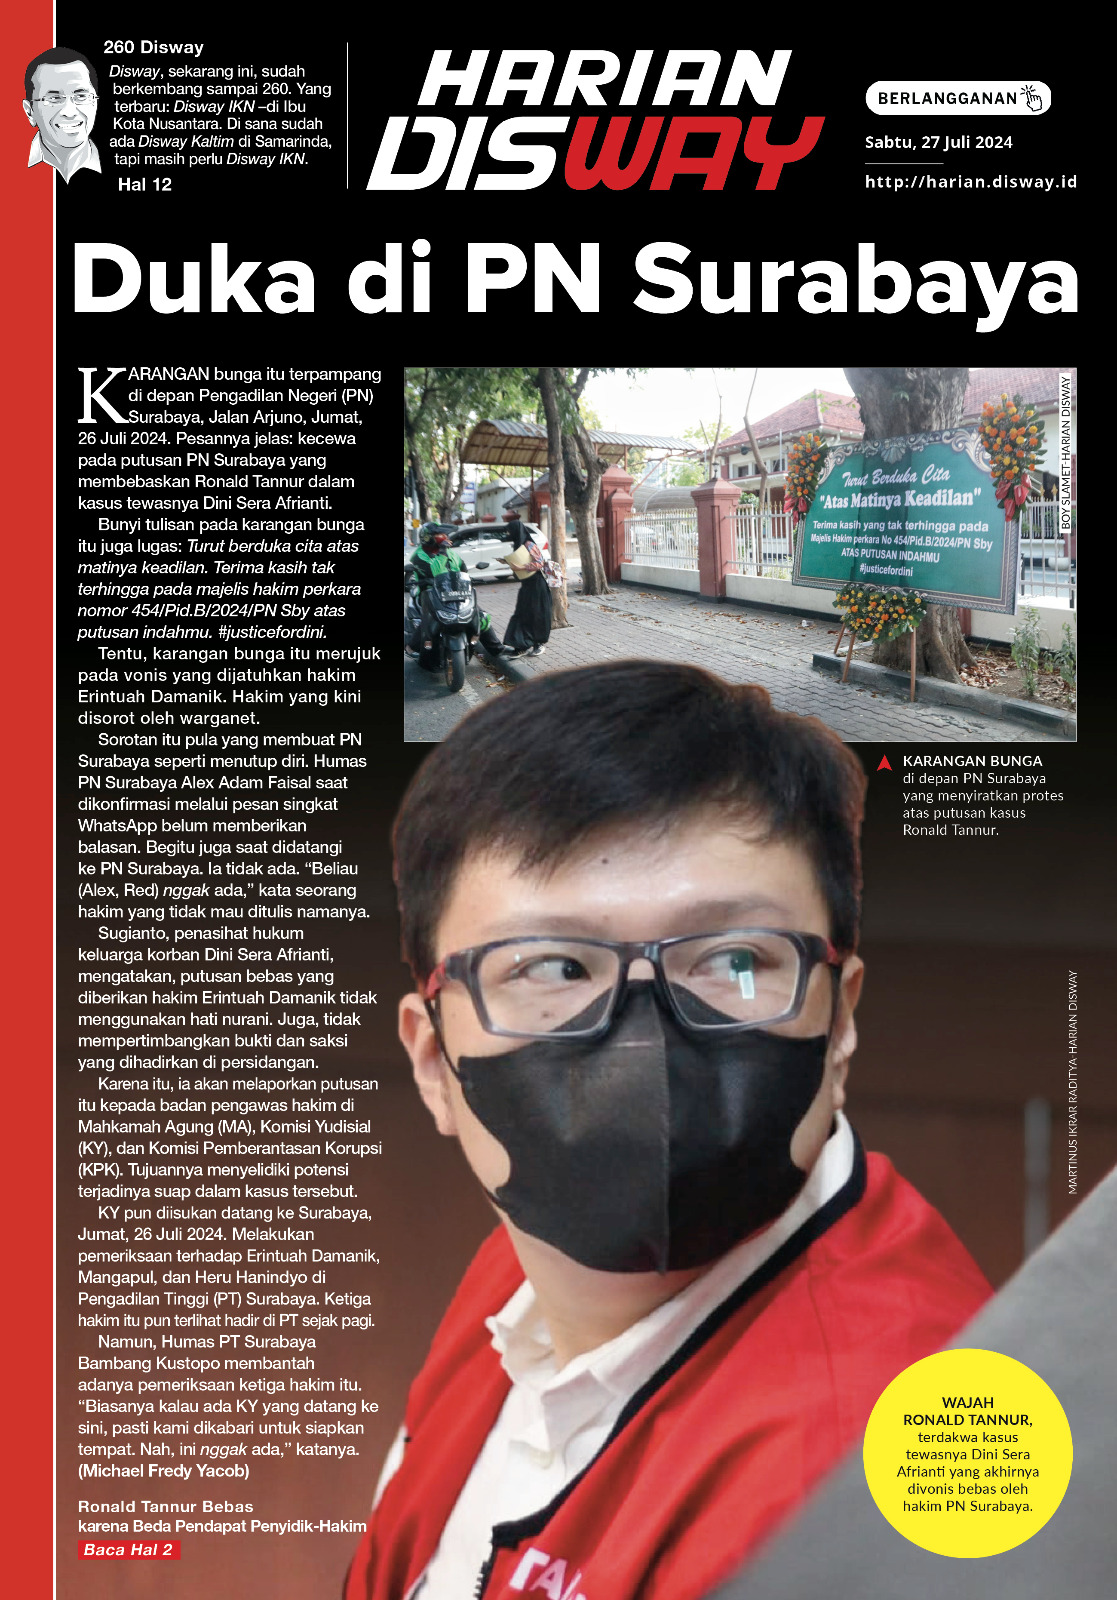 Duka di PN Surabaya